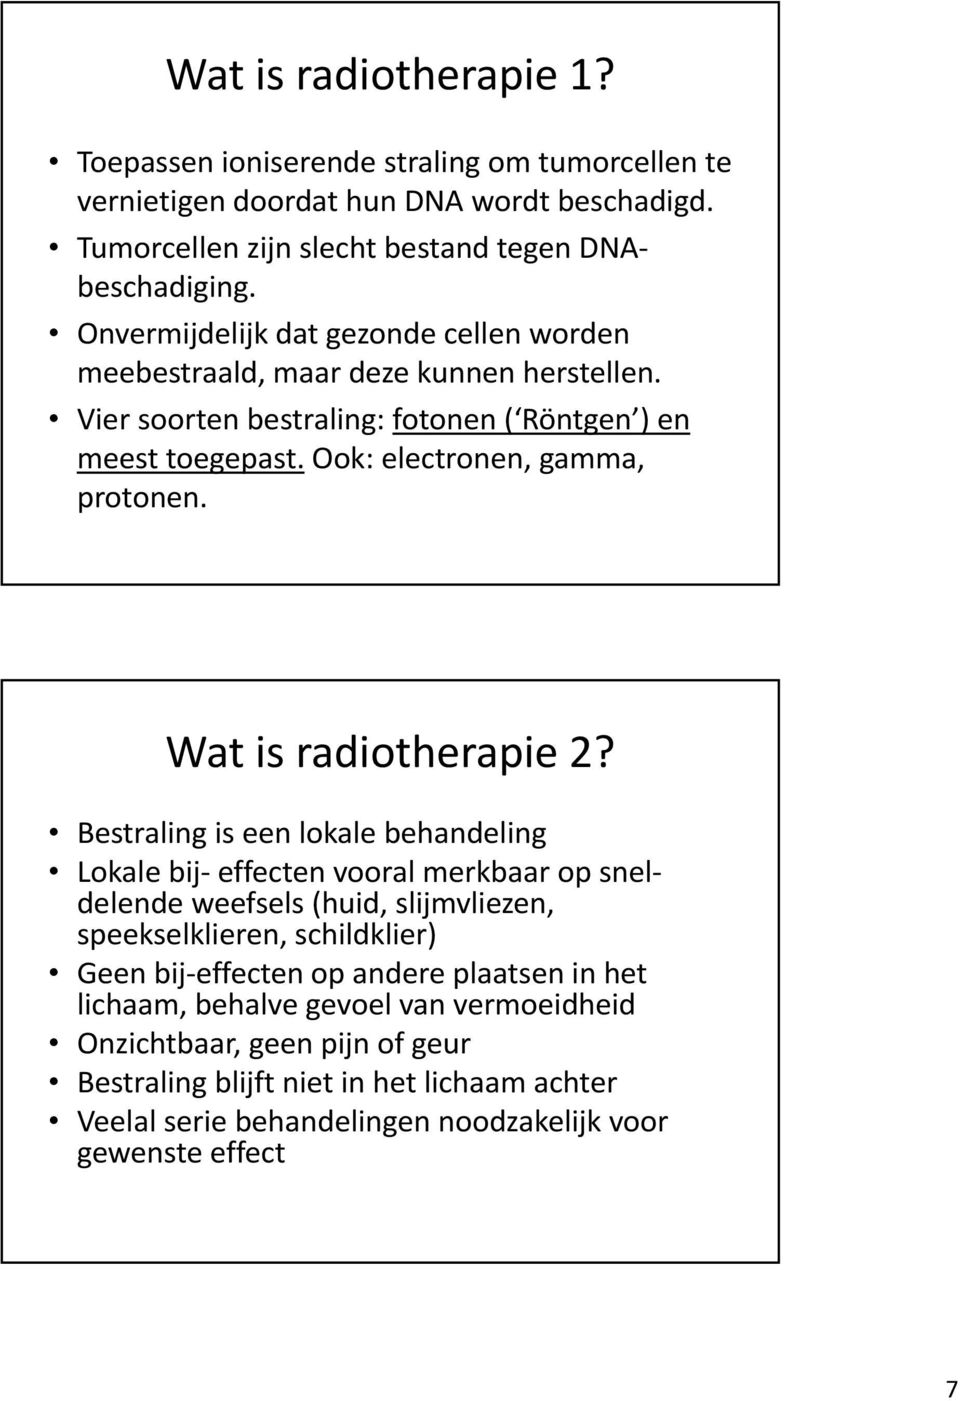 Wat is radiotherapie 2?